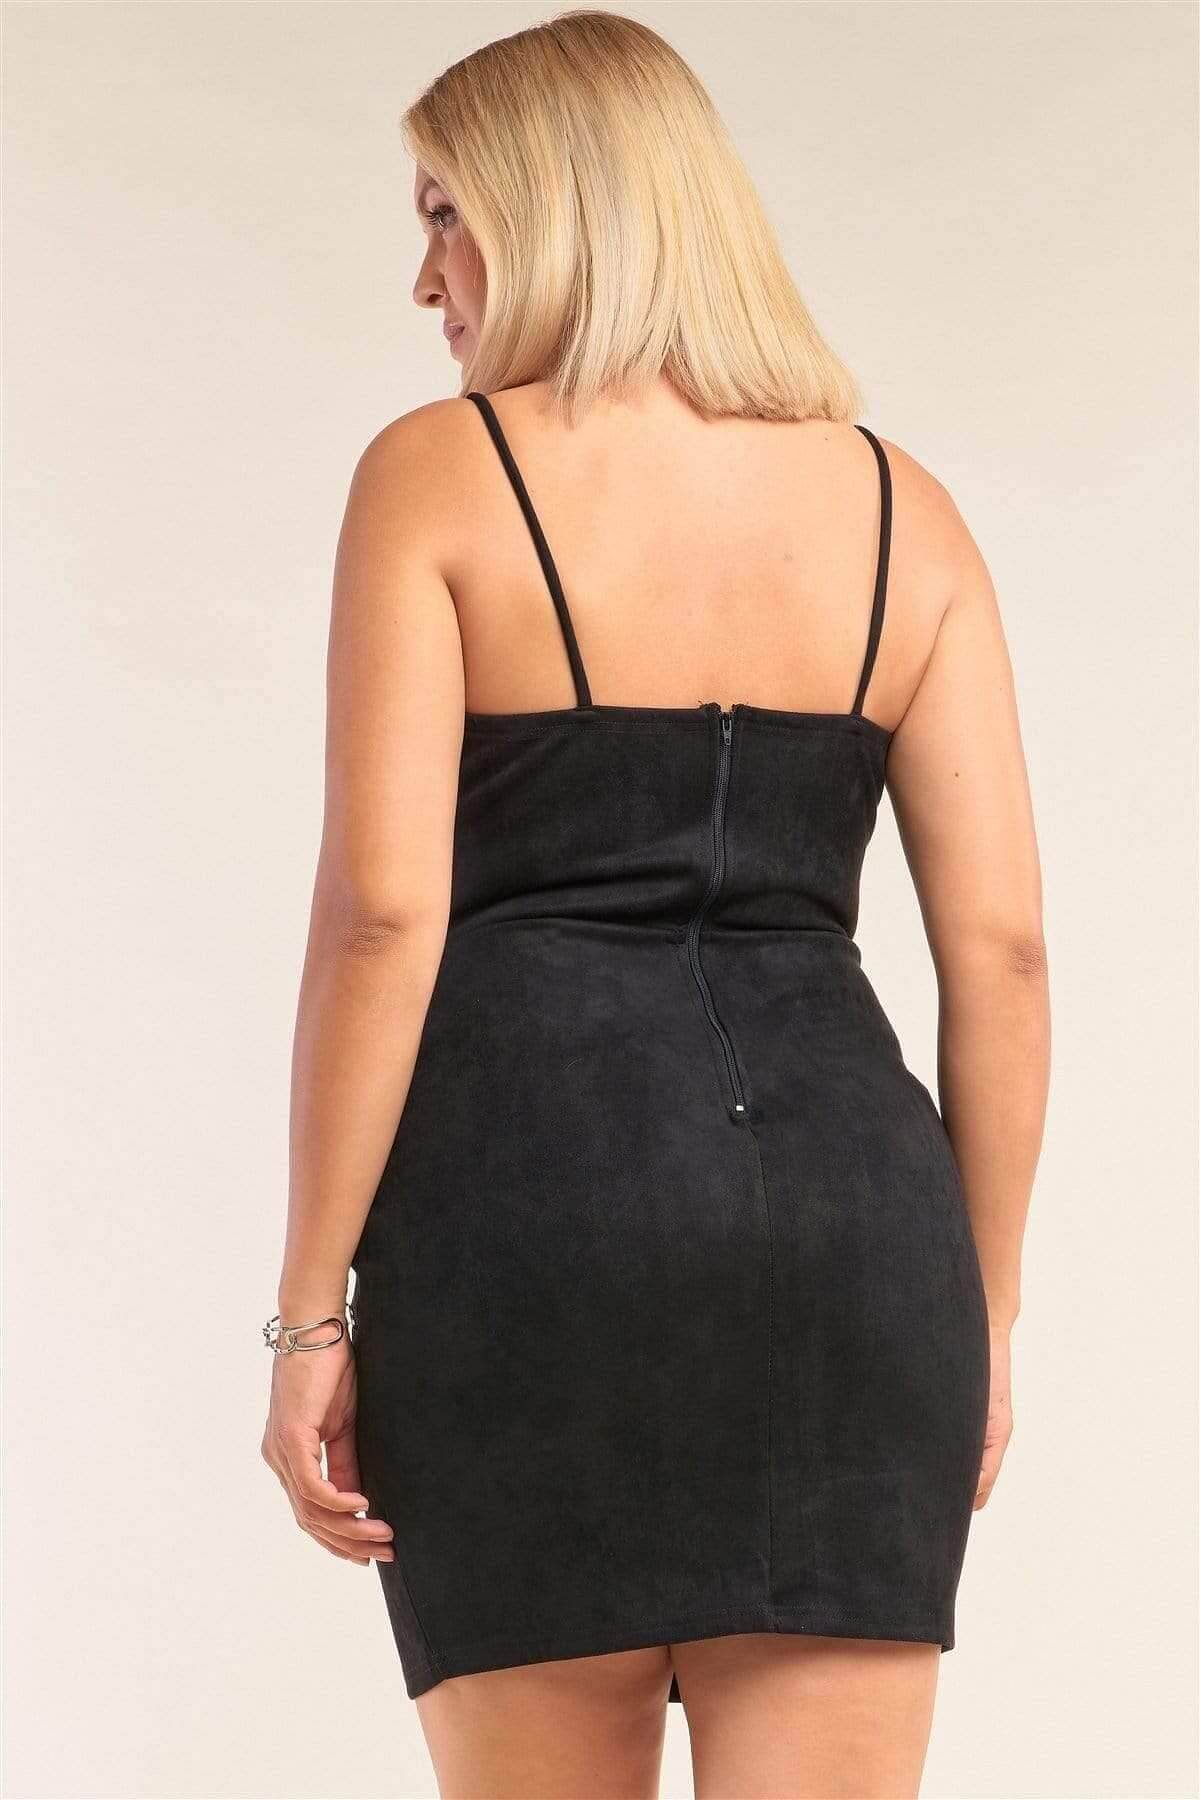 Black Plus Size Spaghetti Strap Suede Mini Dress - Shopping Therapy 1XL Dress